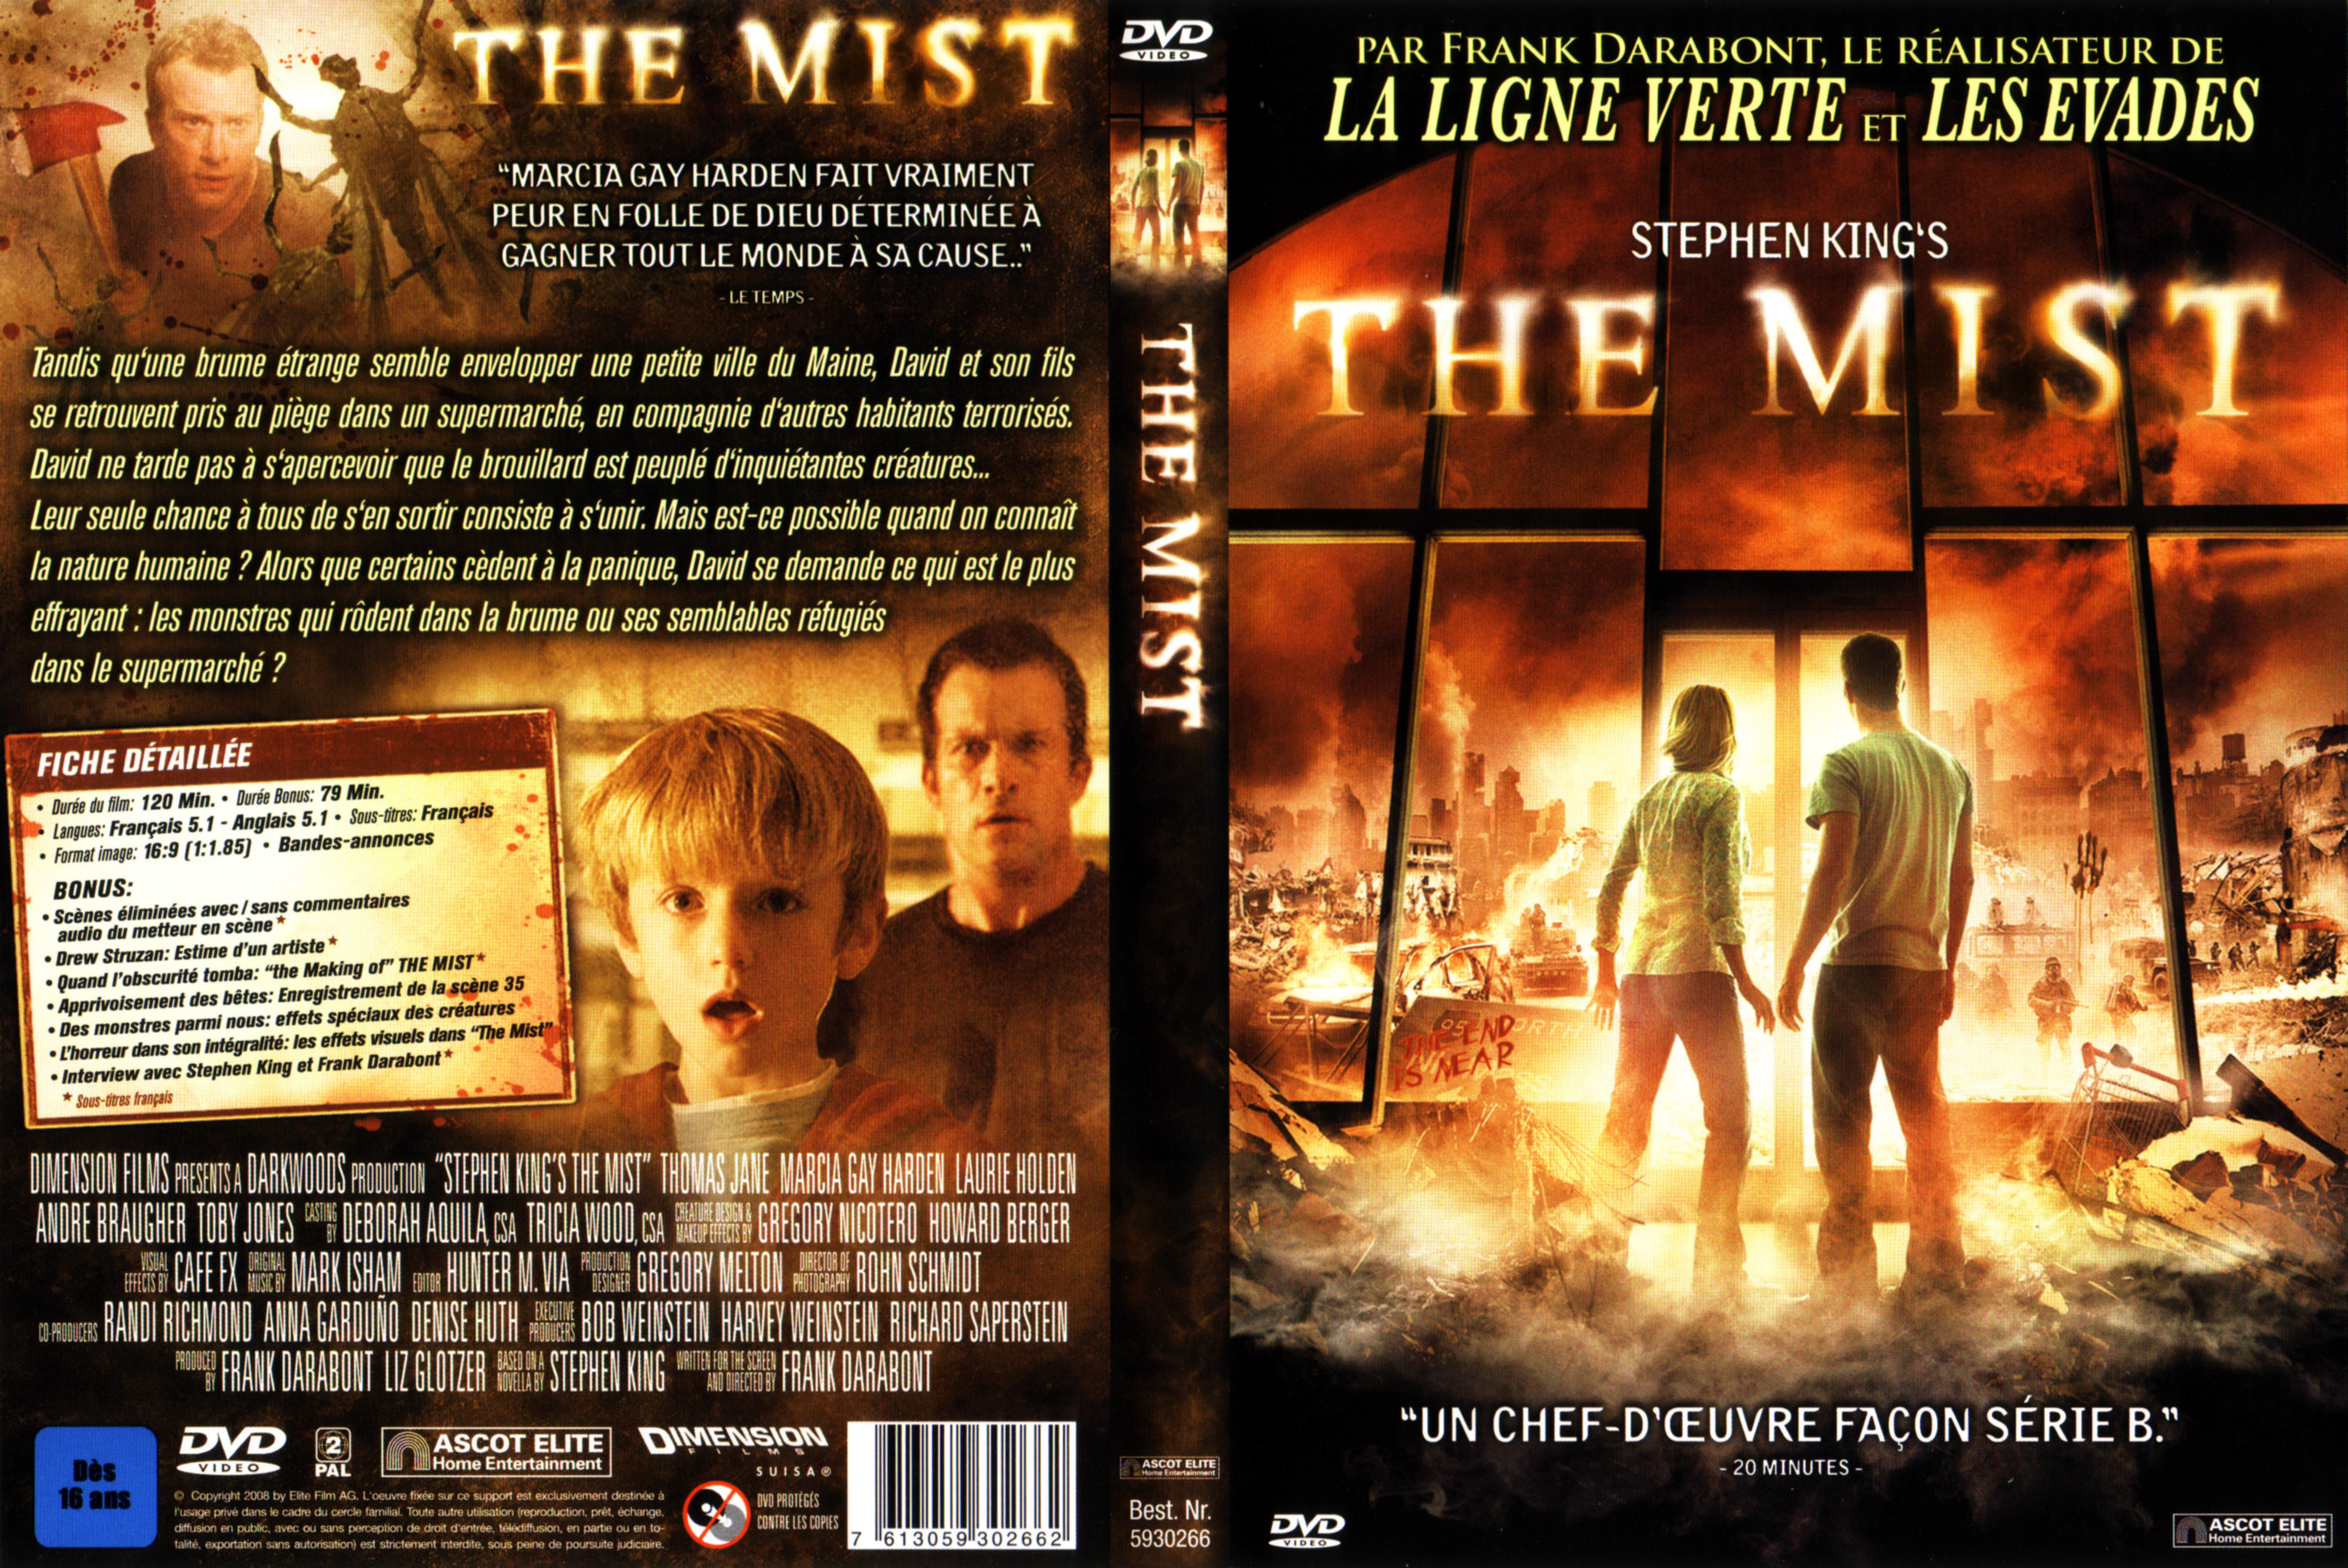 Jaquette DVD The mist v3